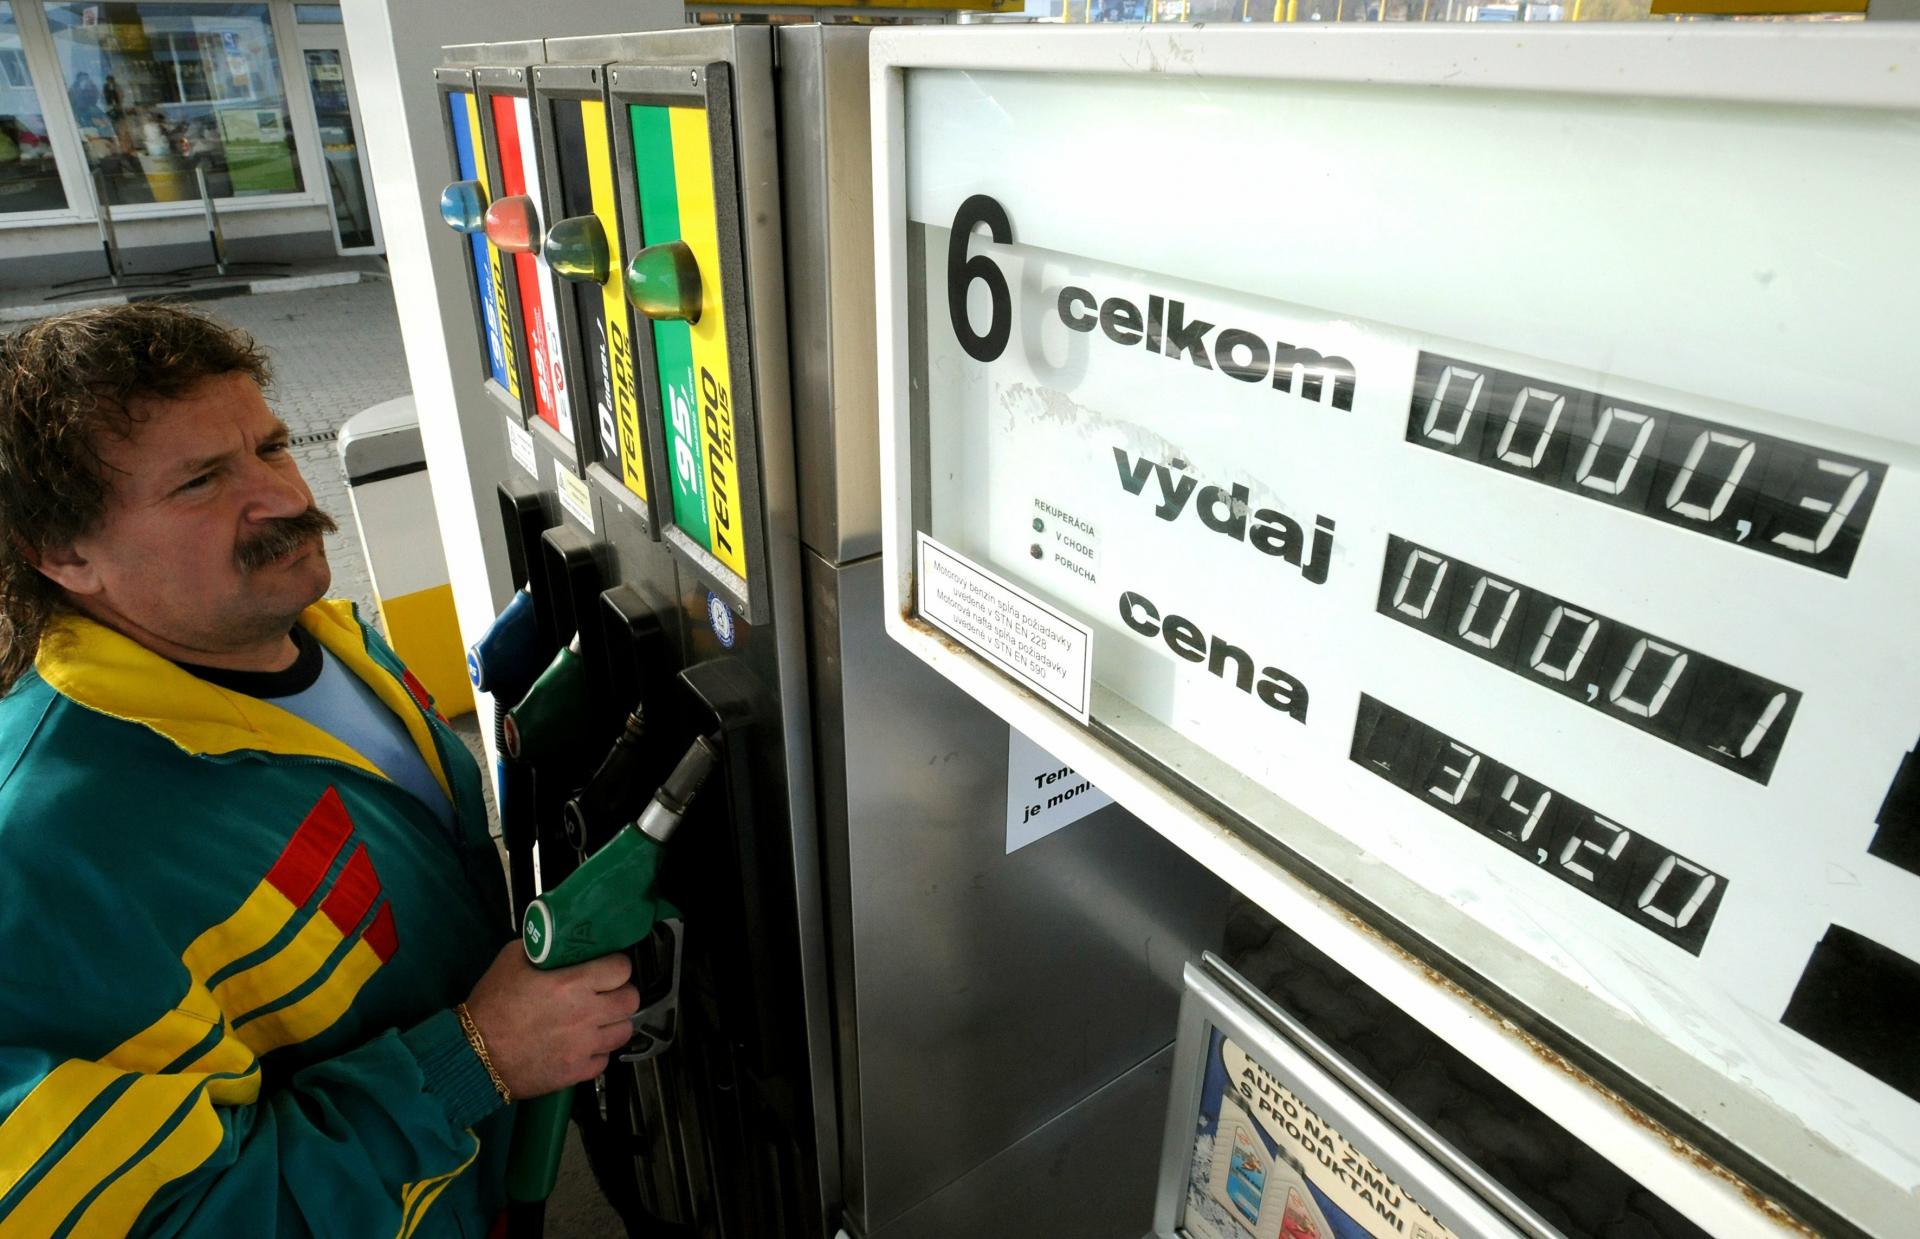 Nafta na Slovensku po predchádzajúcom zlacňovaní zdražela, ceny Naturalu 95 klesli